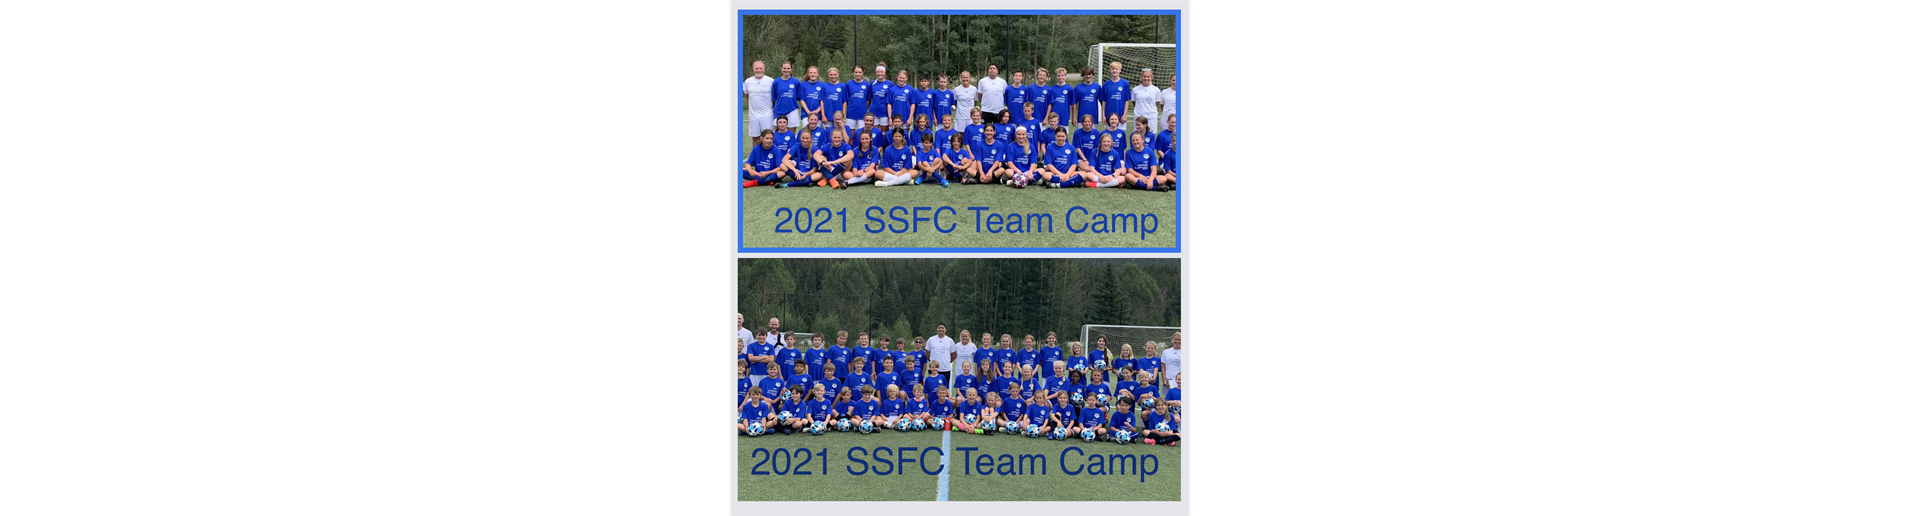 SSFC Pre-Season Team Camp 